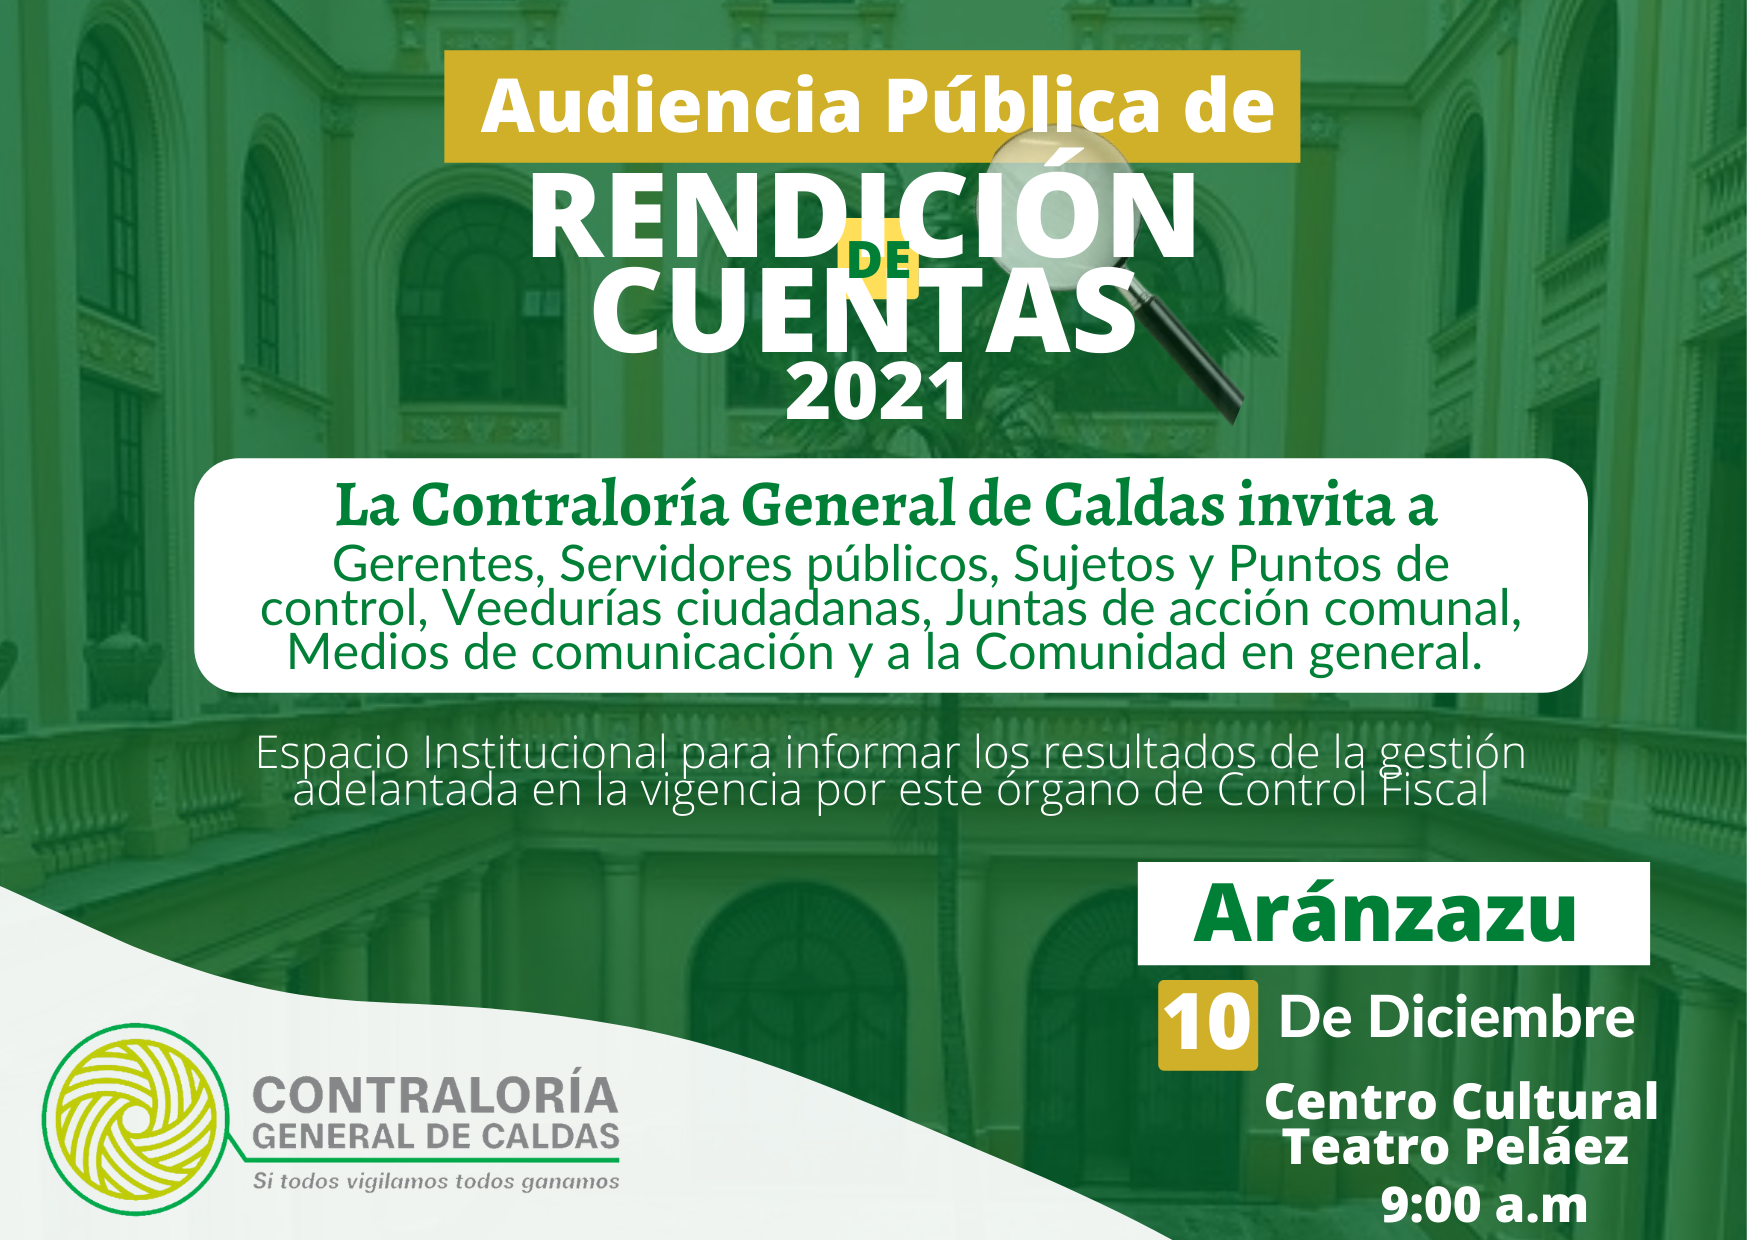 La Contraloría General de Caldas invita a la Audiencia Pública de Rendición de cuentas de la Vigencia 2021 que se realizará el día 10 de Diciembre, en el Municipio de Aránzazu.